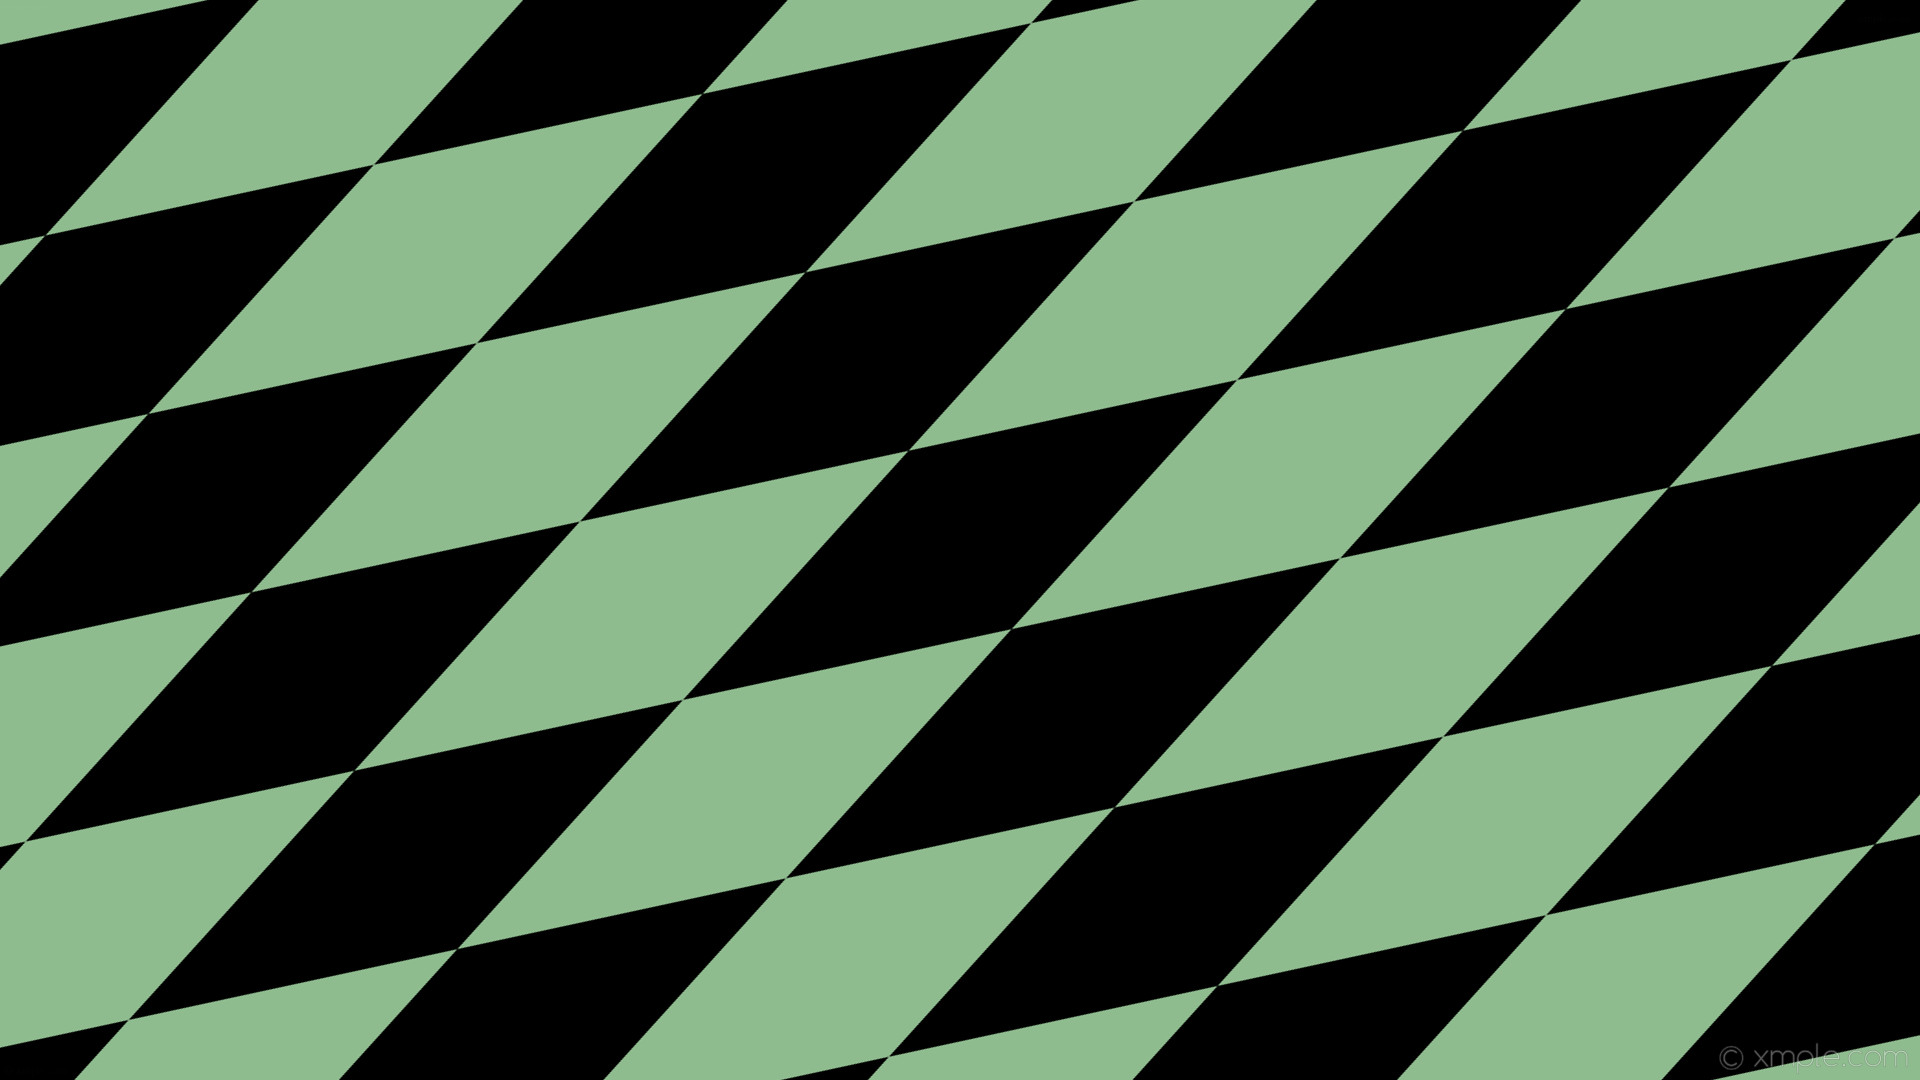 1920x1080 wallpaper rhombus green black diamond lozenge dark sea green #000000  #8fbc8f 30Â° 640px